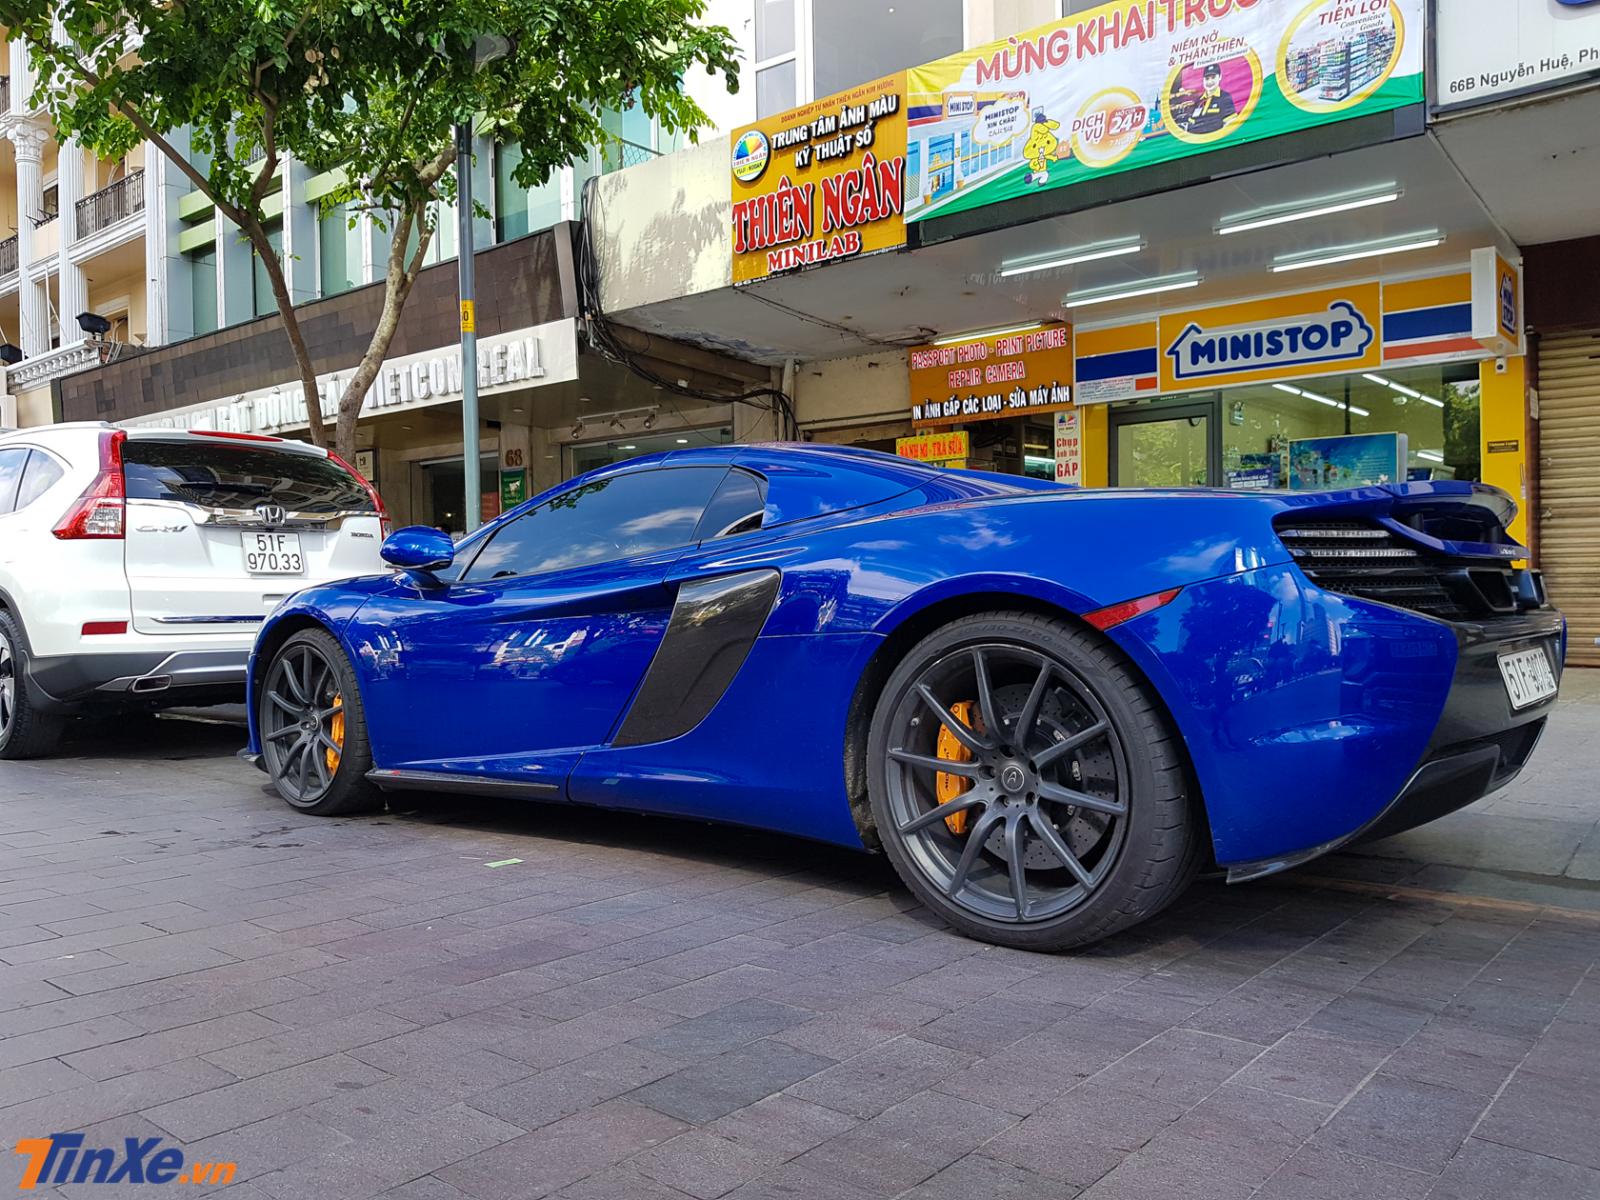 Siêu xe McLaren 650S Spider màu xanh dương độc nhất Việt Nam này được đưa về nước từ cuối tháng 7/2016